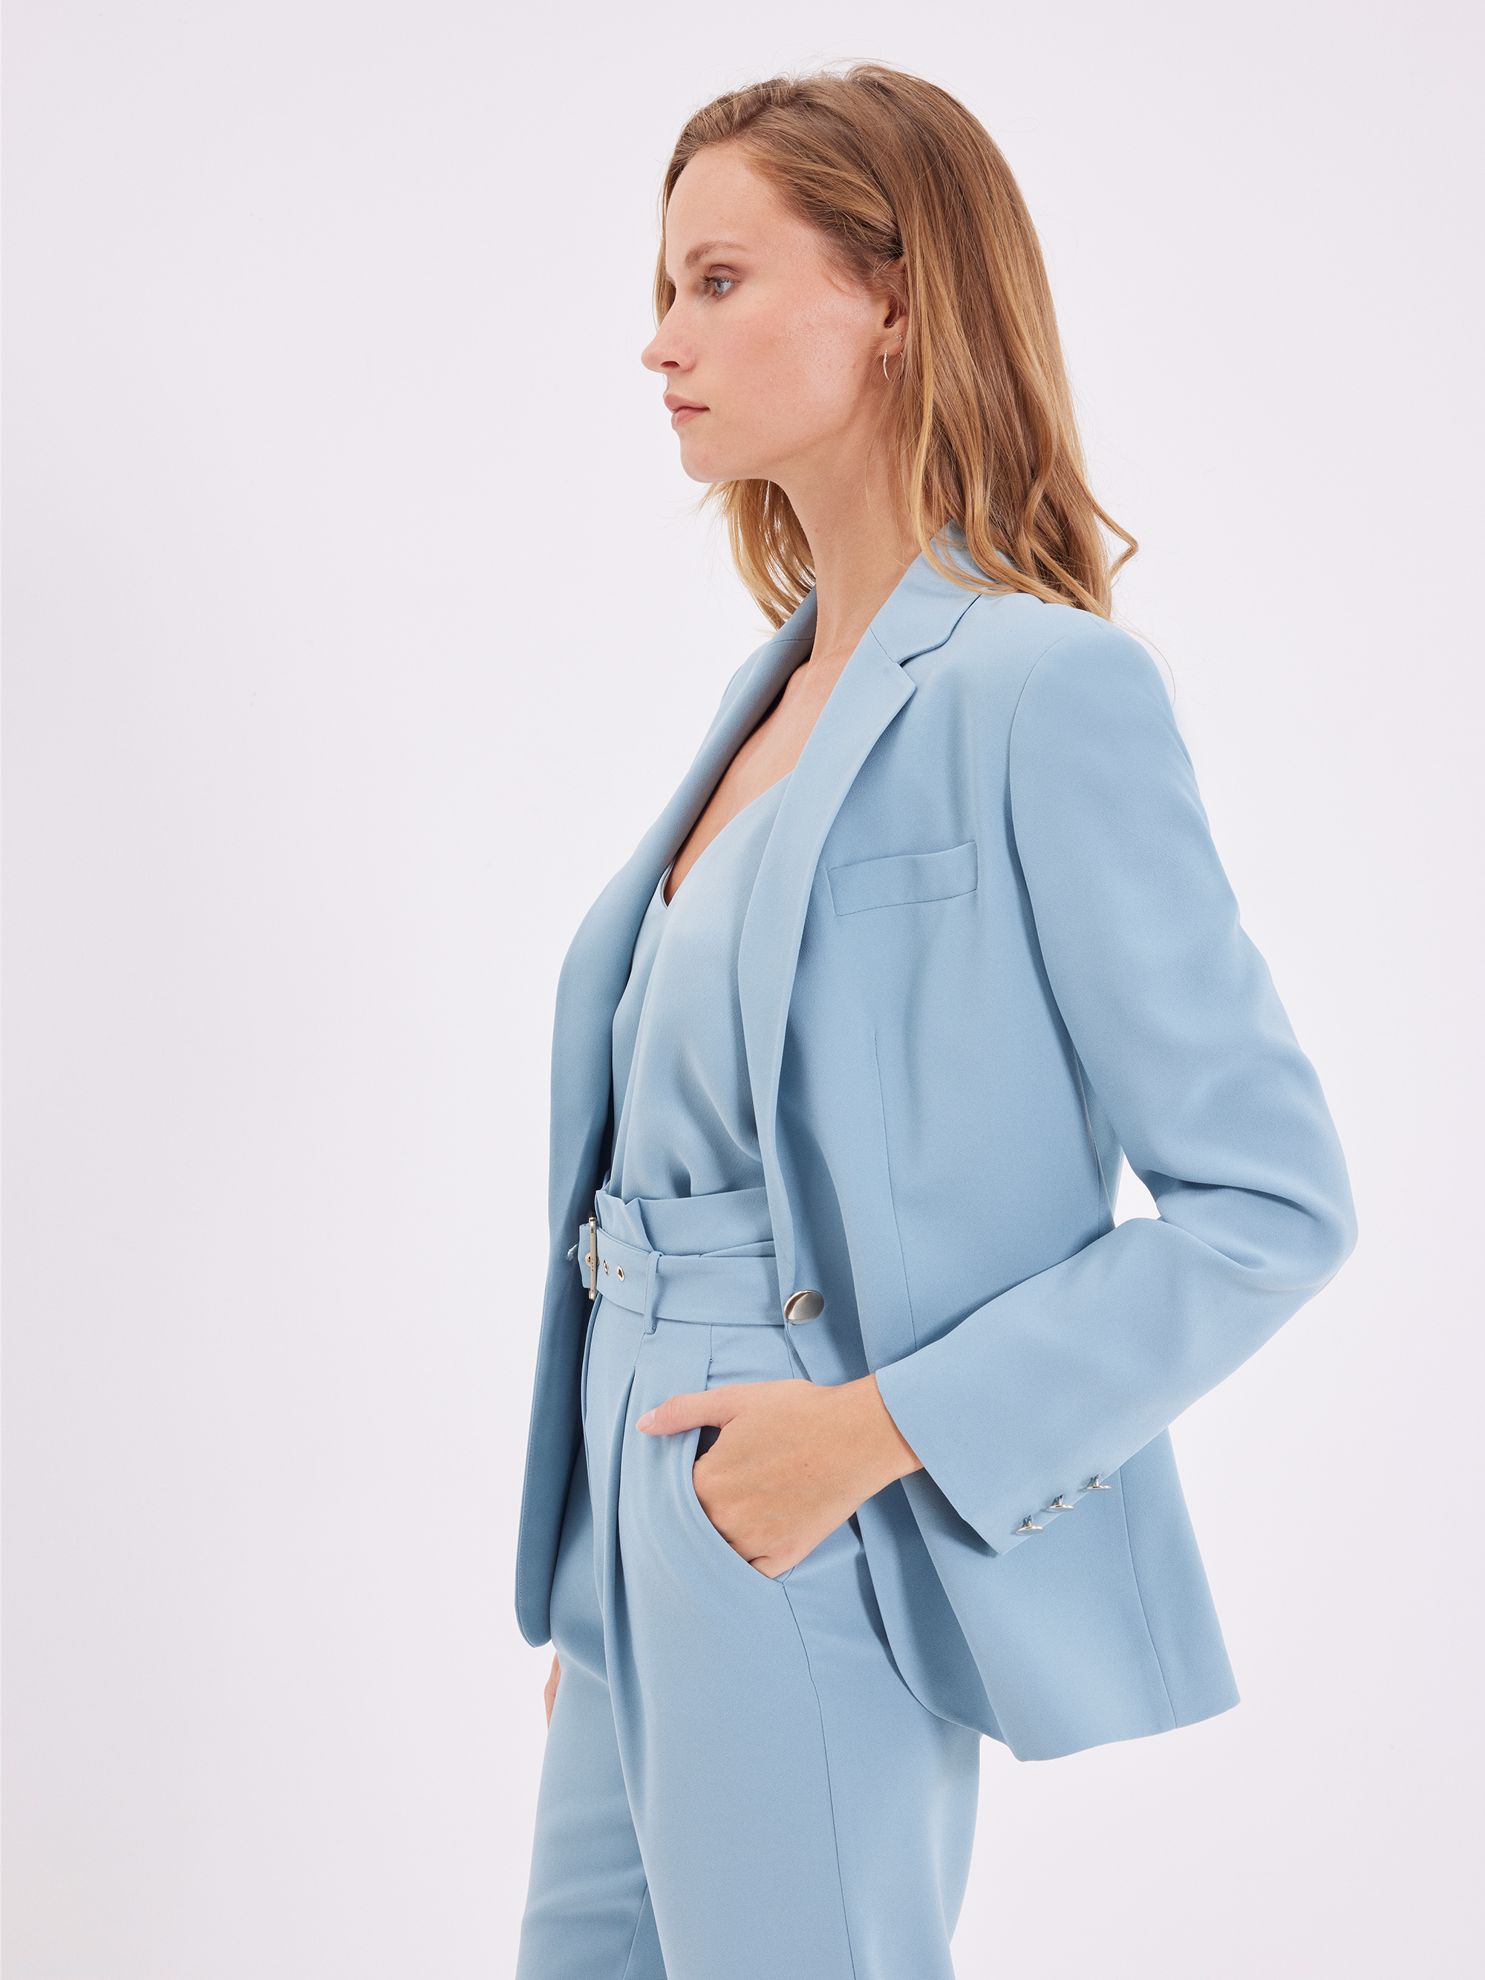 Karaca Kadın Ceket-Mavi. ürün görseli